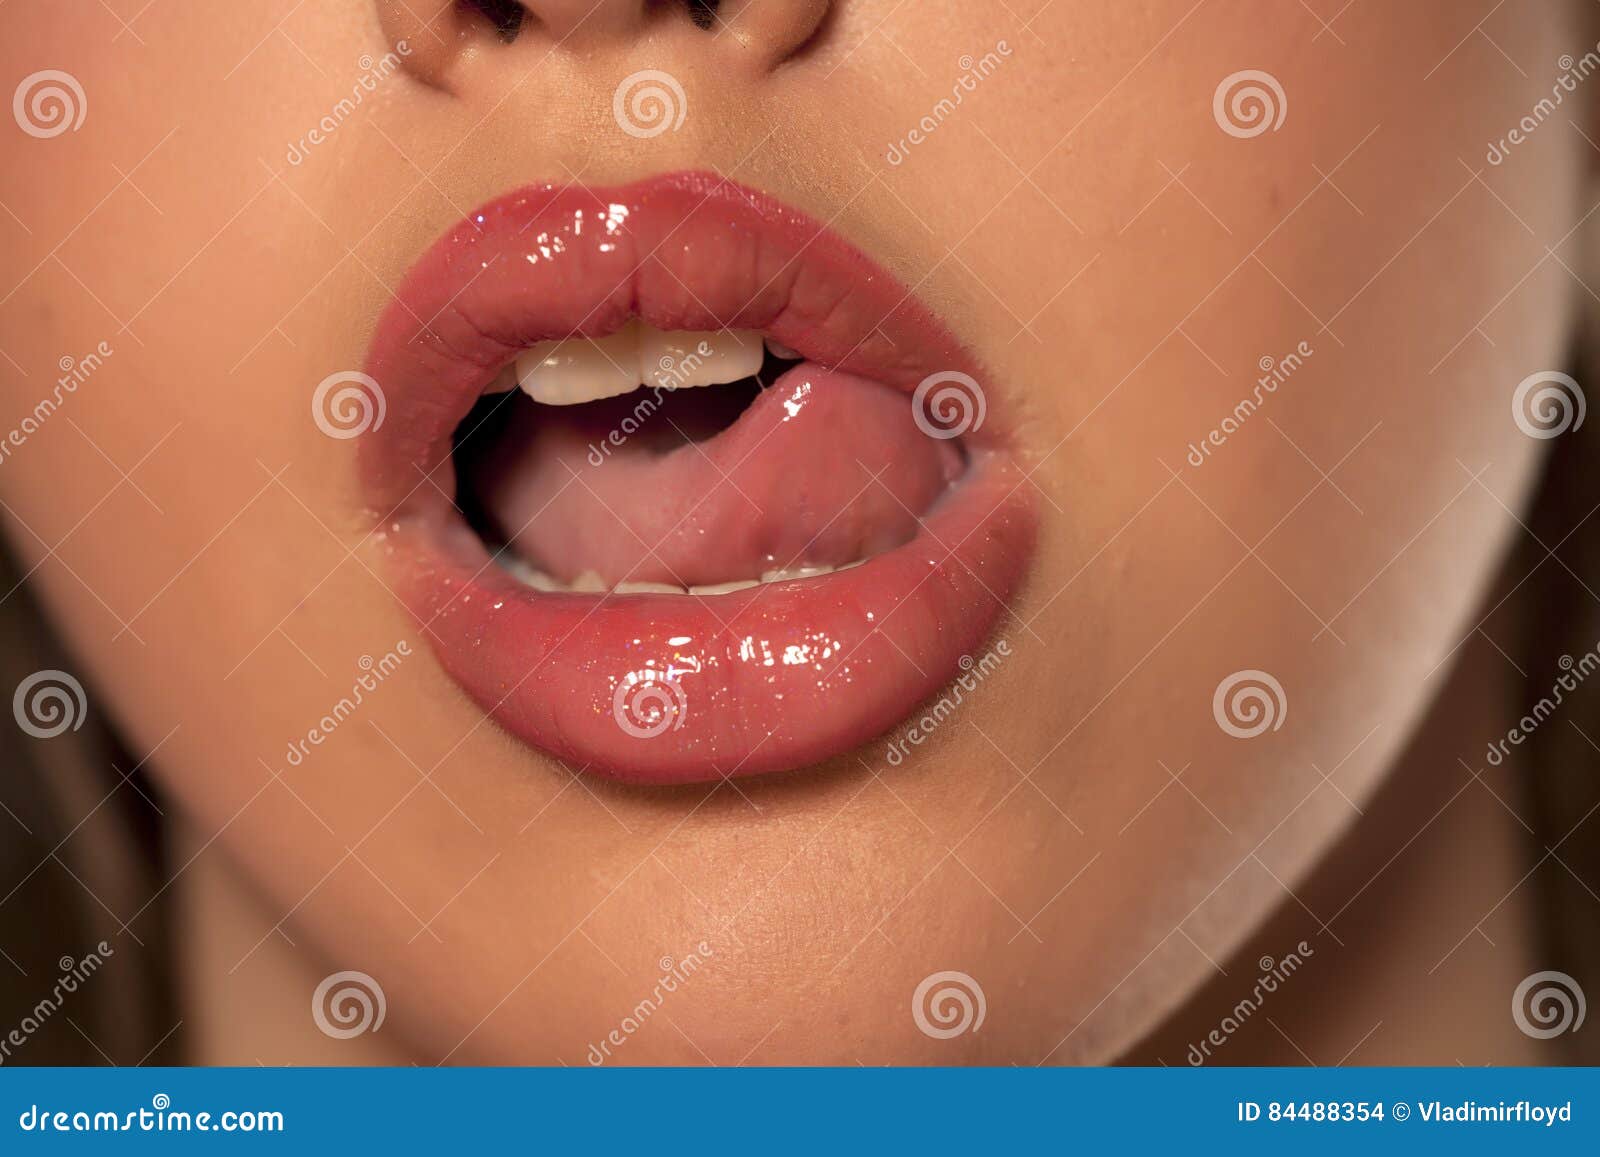 Up close 3. Открытые губы. Облизывает губы. Открытый женский рот. Женский рот с языком.